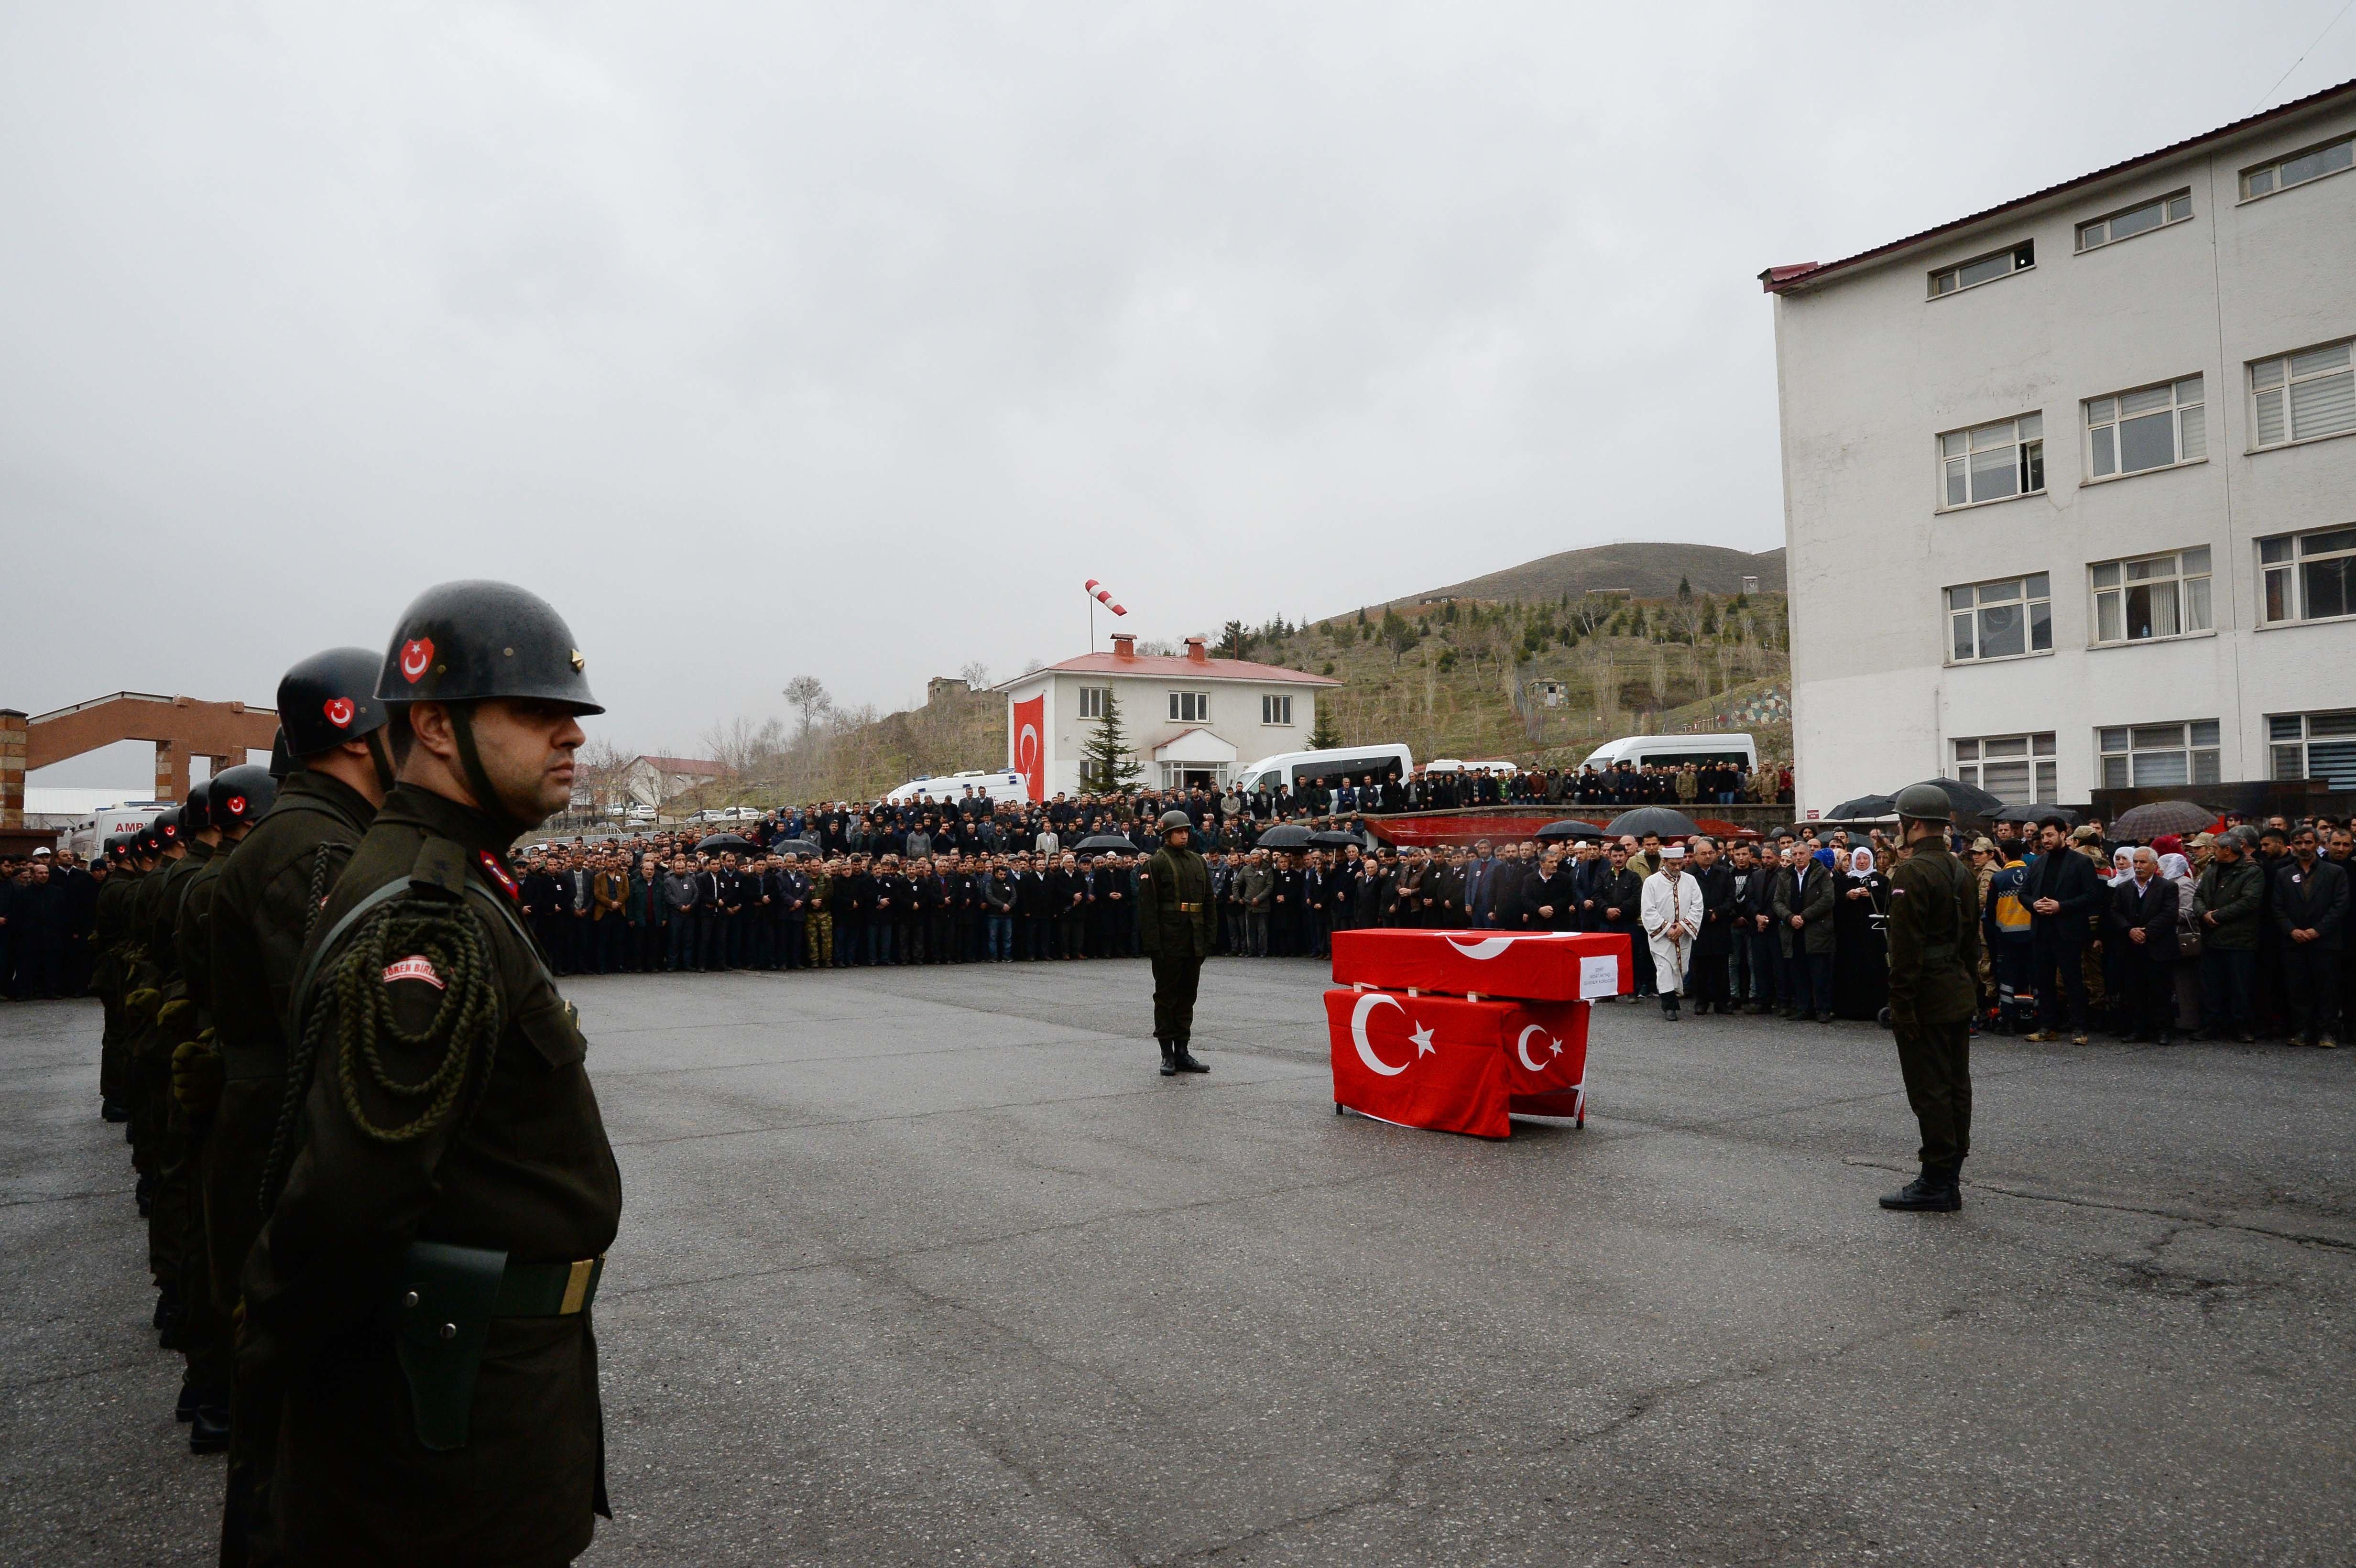 Şehit güvenlik korucusu Sedat Aktaş son yolculuğuna uğurlandı